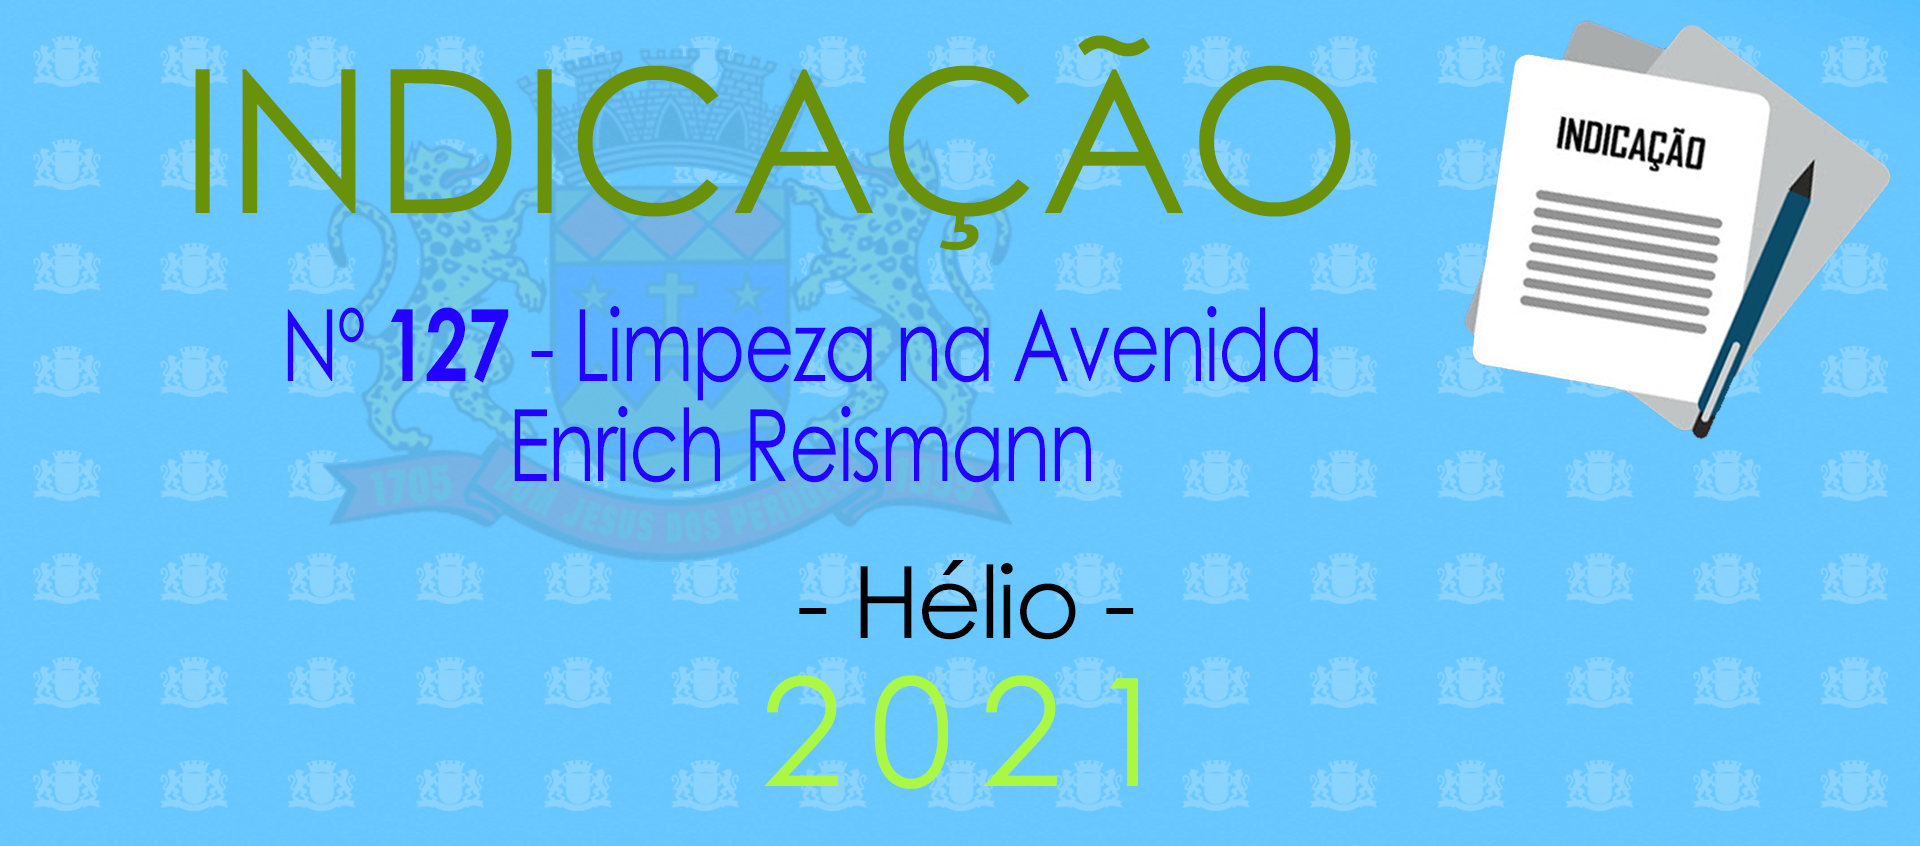 Indicação 127-2021 - Limpeza na Enrich Reismann - Hélio